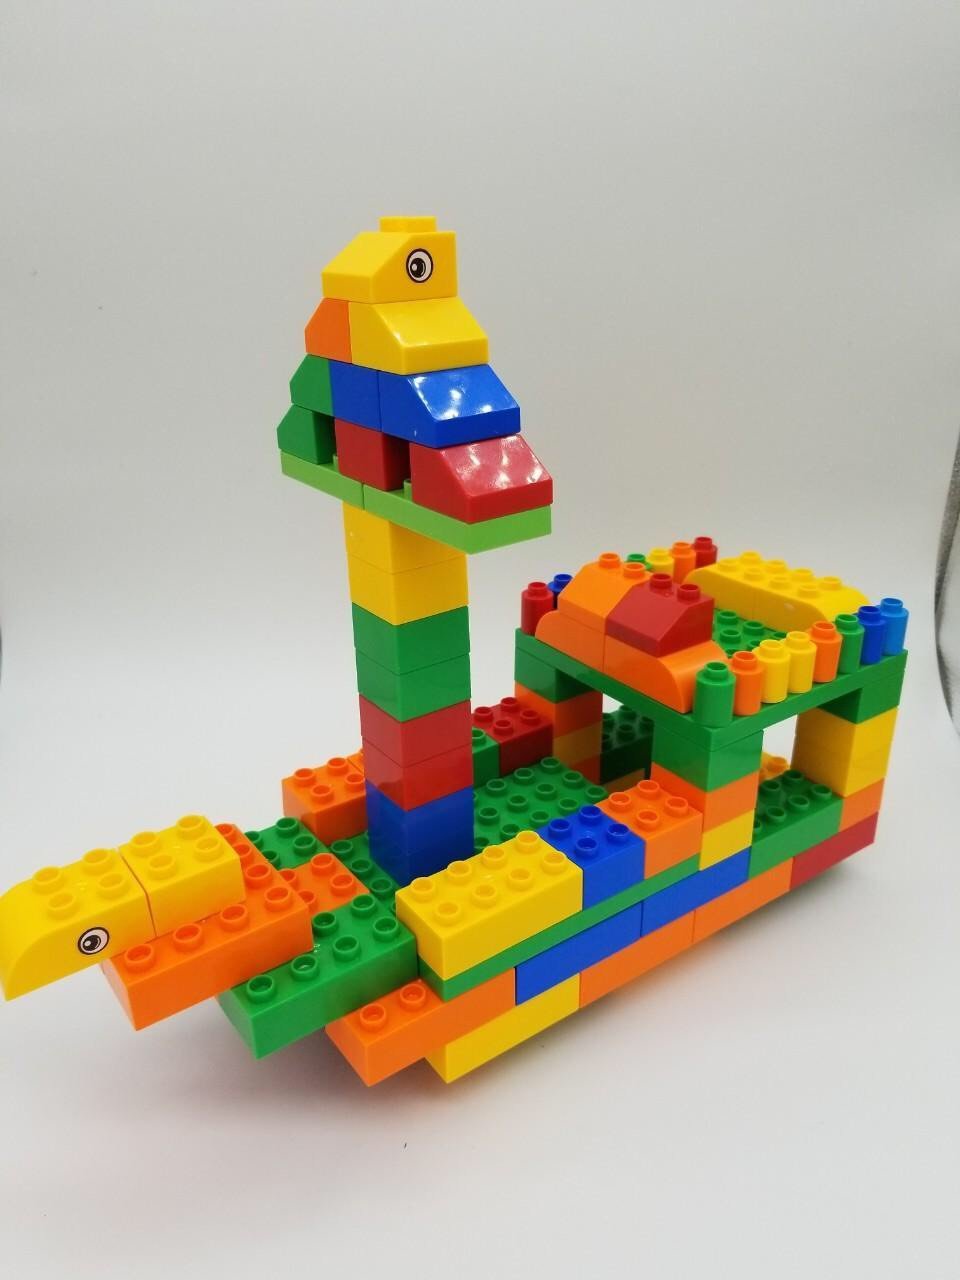 Bộ Sưu Tập Hình Lego Siêu Đẳng với Hơn 999 Hình Ảnh Chất Lượng 4K